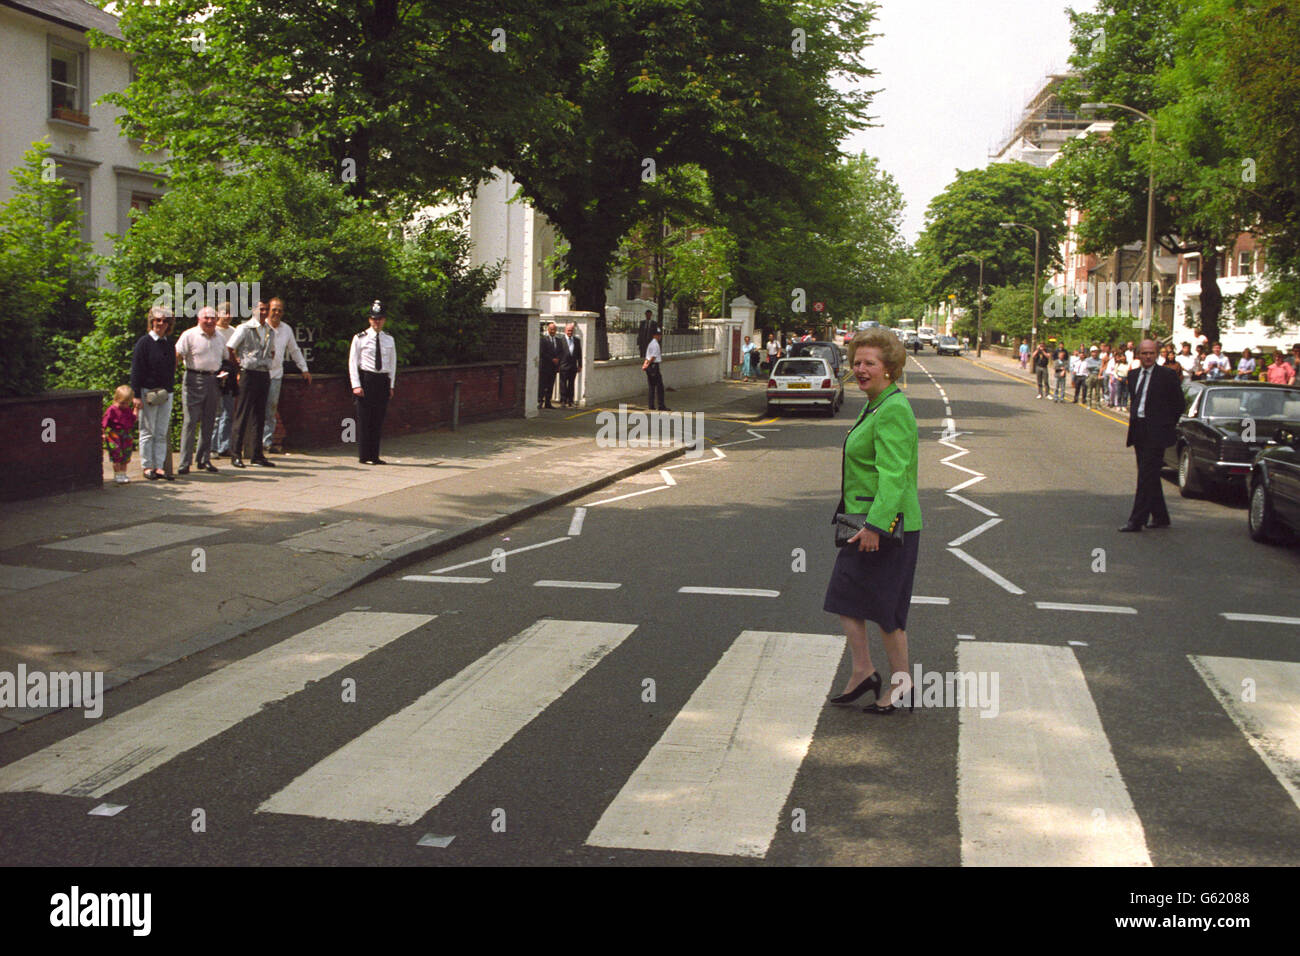 Abbey Road zebra crossing repainted in coronavirus lockdown, The Beatles